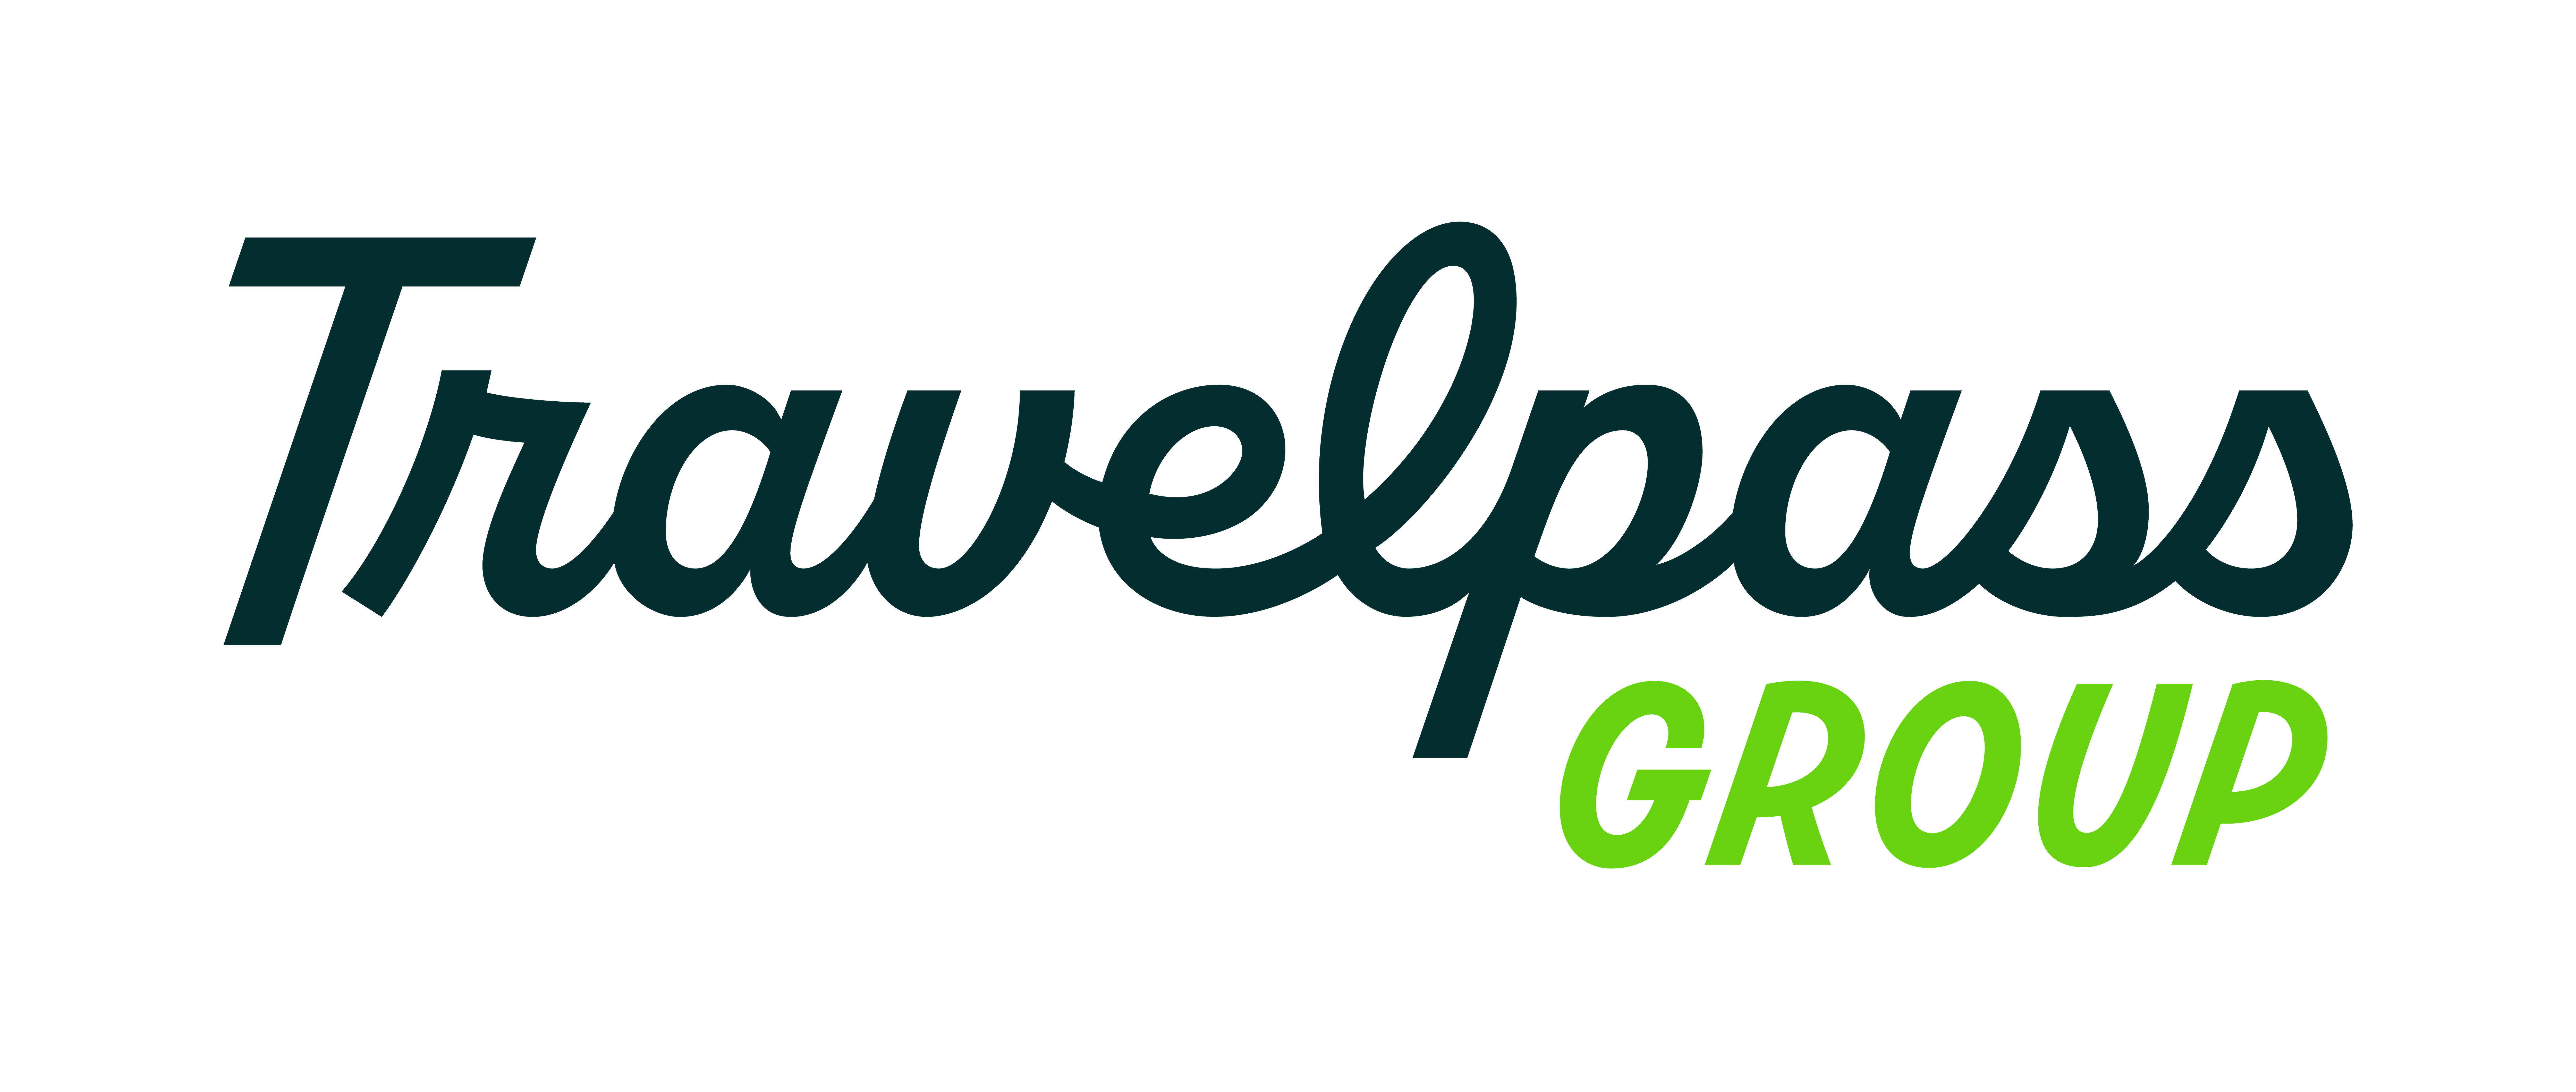 Travelpass Group Company Logo